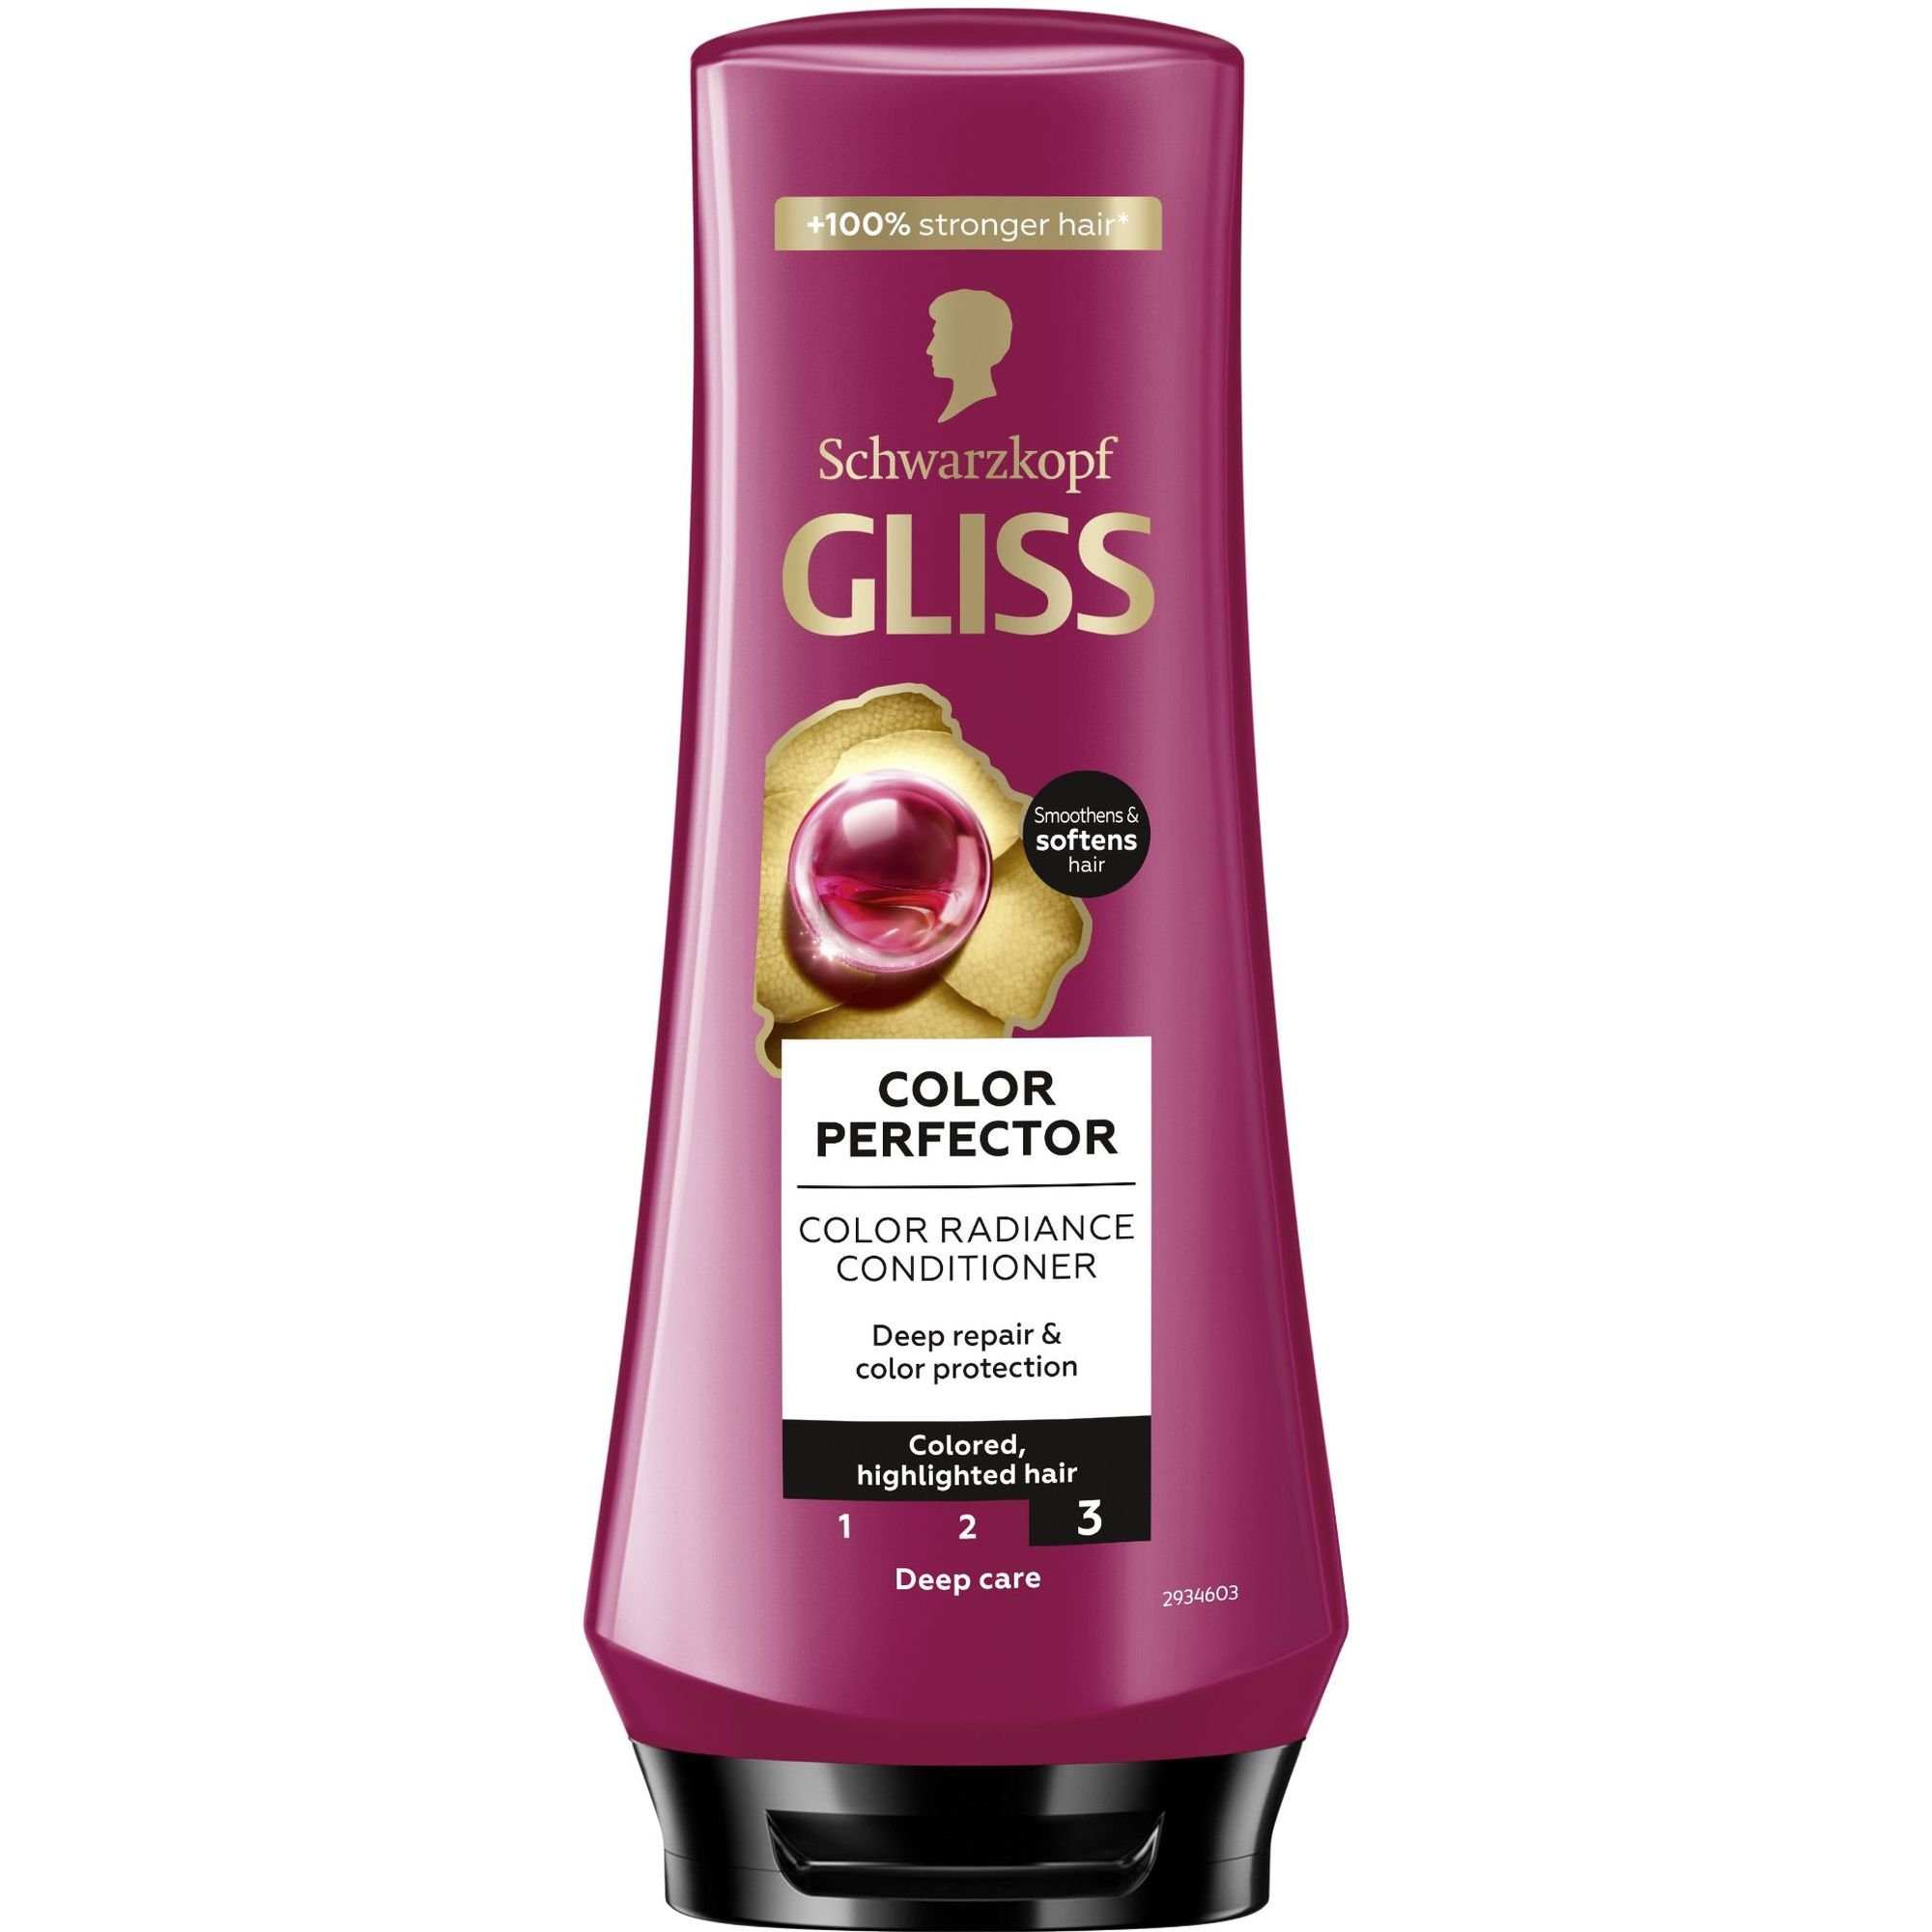 Бальзам Gliss Color Perfector для окрашенных и мелированных волос 200 мл - фото 1